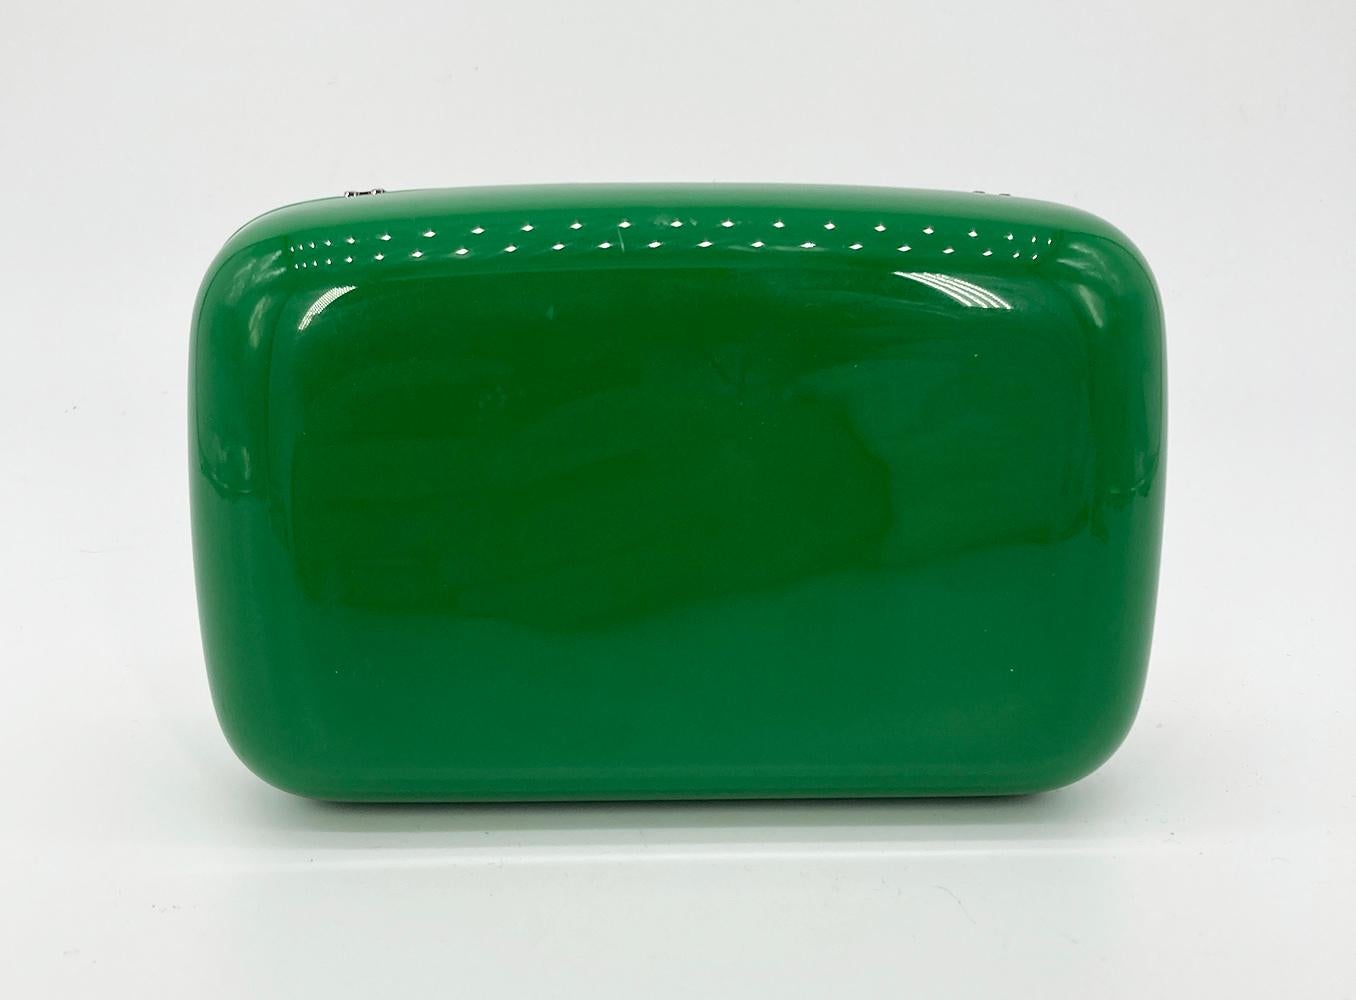 Fendi Green Logo Box Clutch in gutem Zustand. Grünes Hartacryl mit passendem grünen Lederlogo auf der Vorderseite. Magnetischer Verschluss. Innenausstattung aus grünem Leder mit angebrachtem Kettenschulterriemen. Insgesamt guter Zustand. Ein Riss im